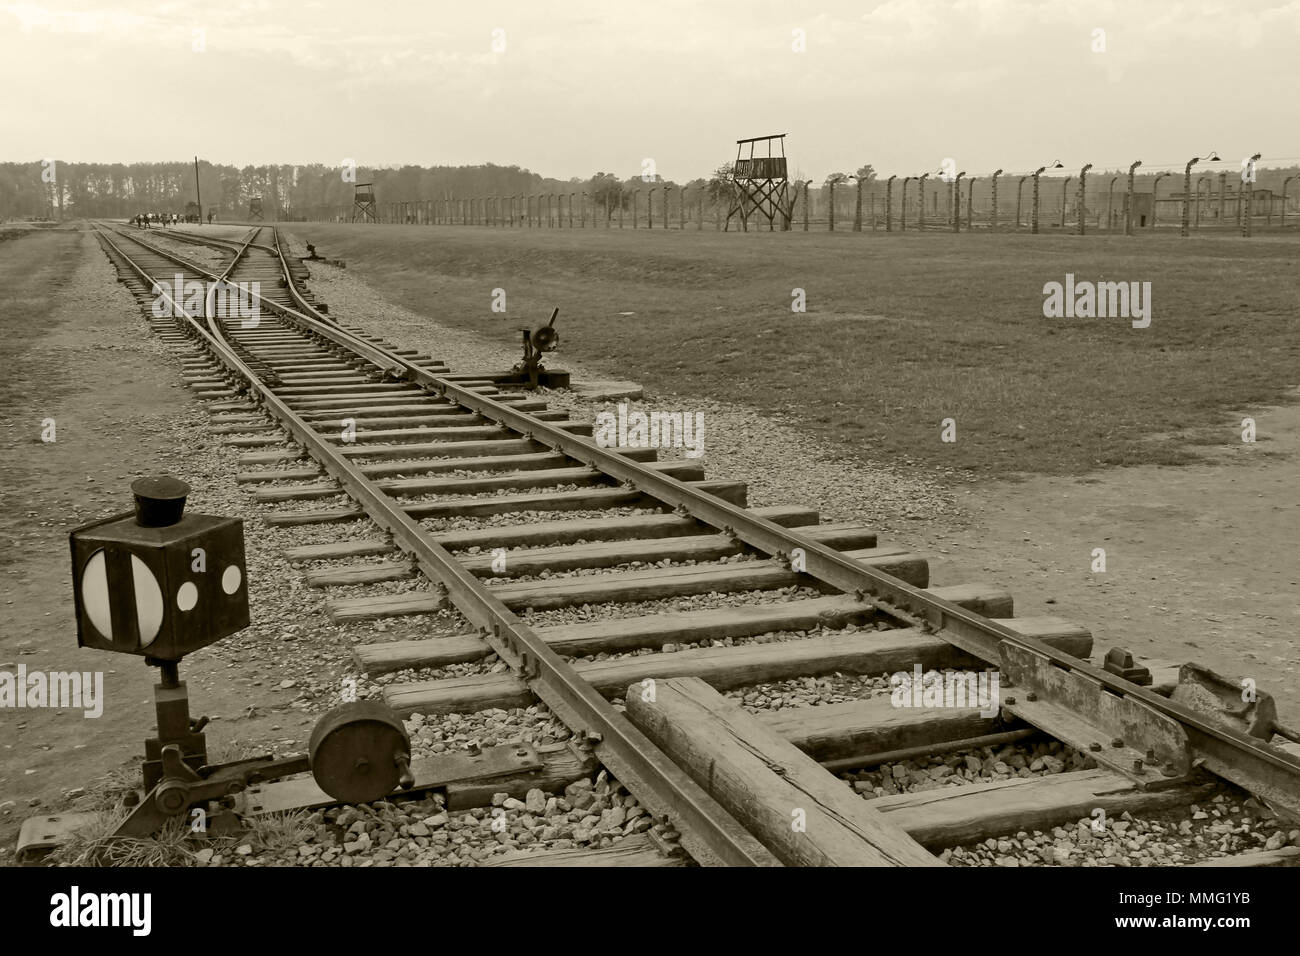 AUSCHWITZ, Polen, 12. Oktober 2013: die Bahn der Eisenbahn im Konzentrationslager Auschwitz Birkenau KZ, Schwarz, Weiß und Beige duplex Verarbeitung Fotografie, Polen Stockfoto